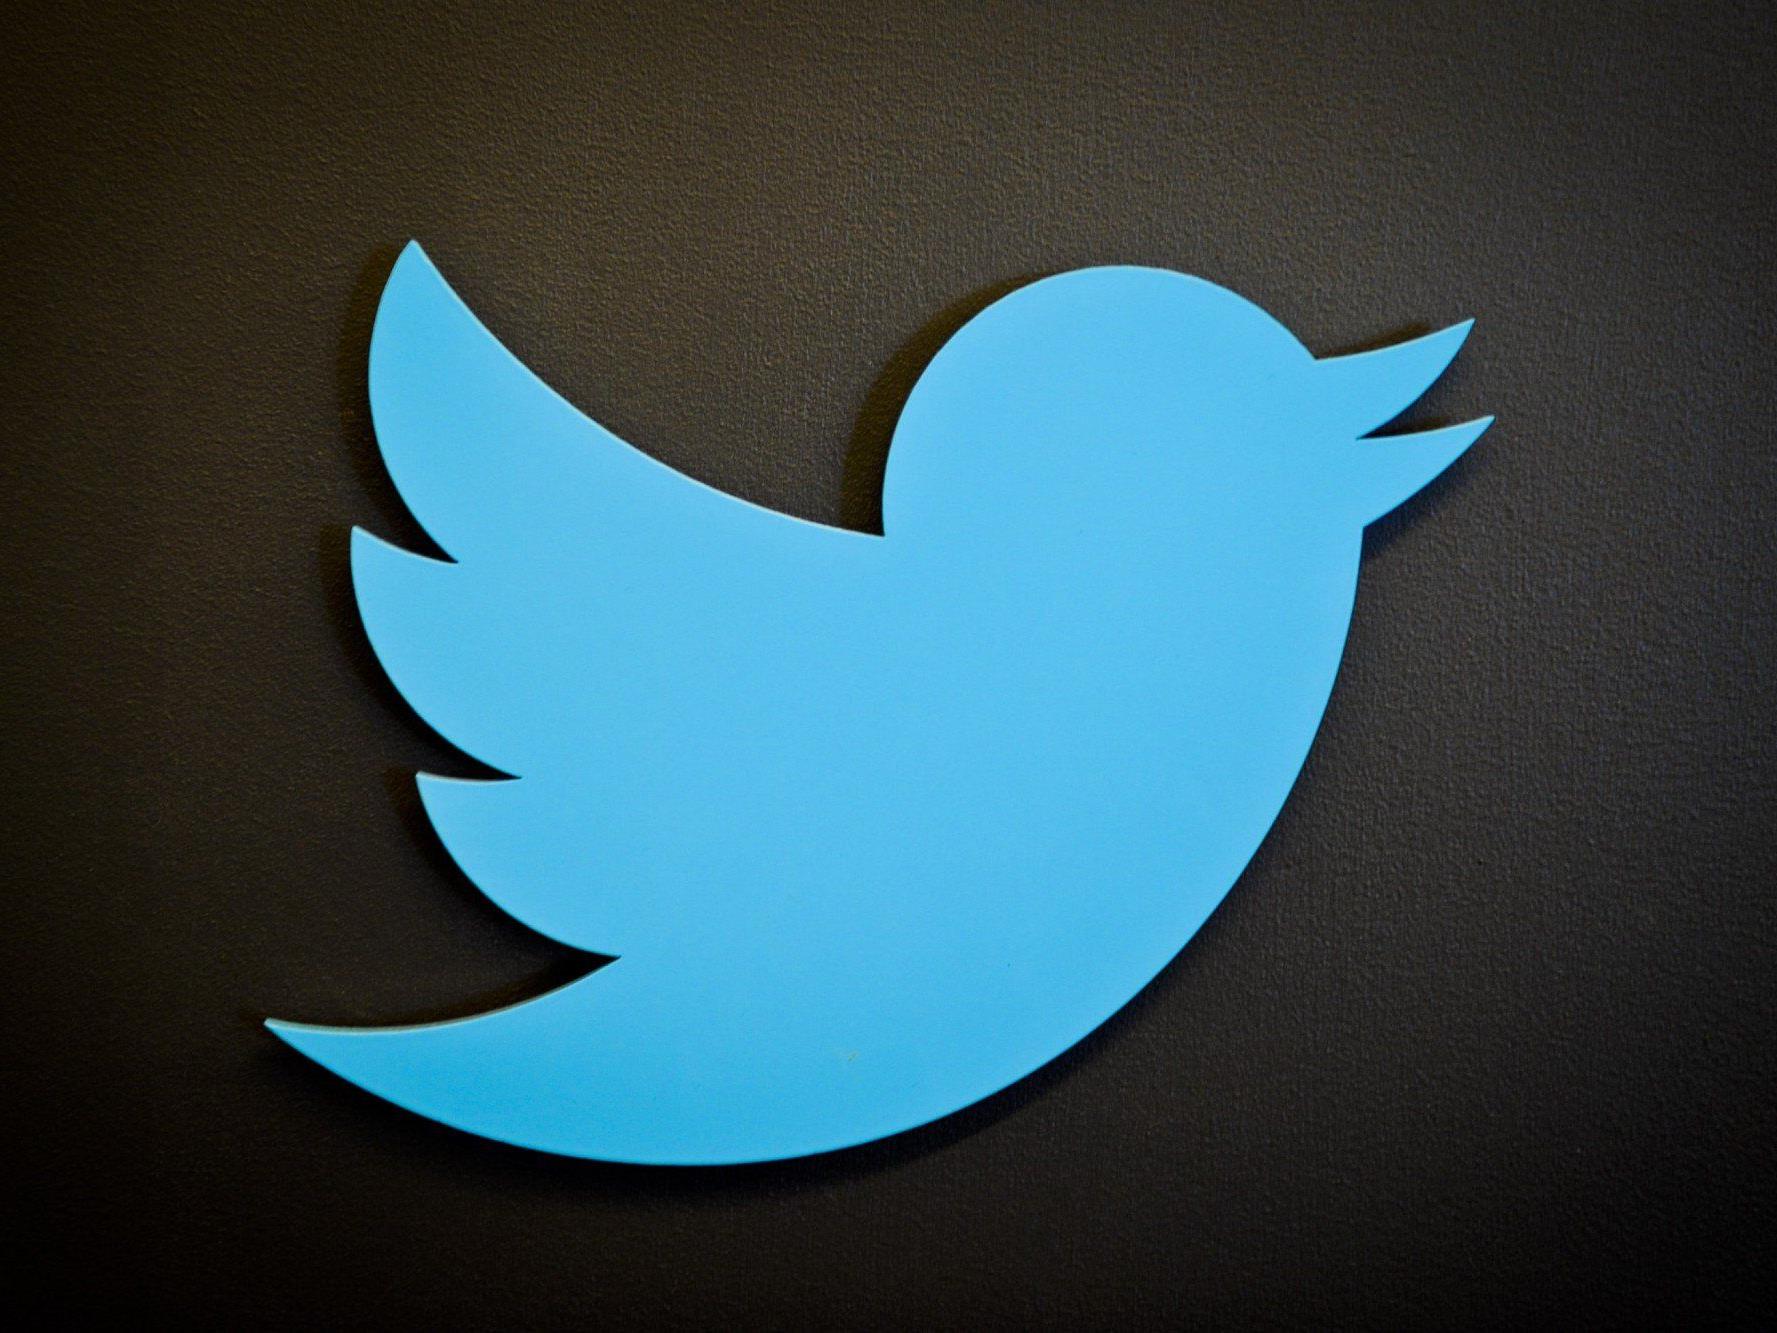 Österreichischer Twitter-Nutzer Firo Xl entdeckt Sicherheitslücke bei Tweetdeck - Client von Twitter blockiert.